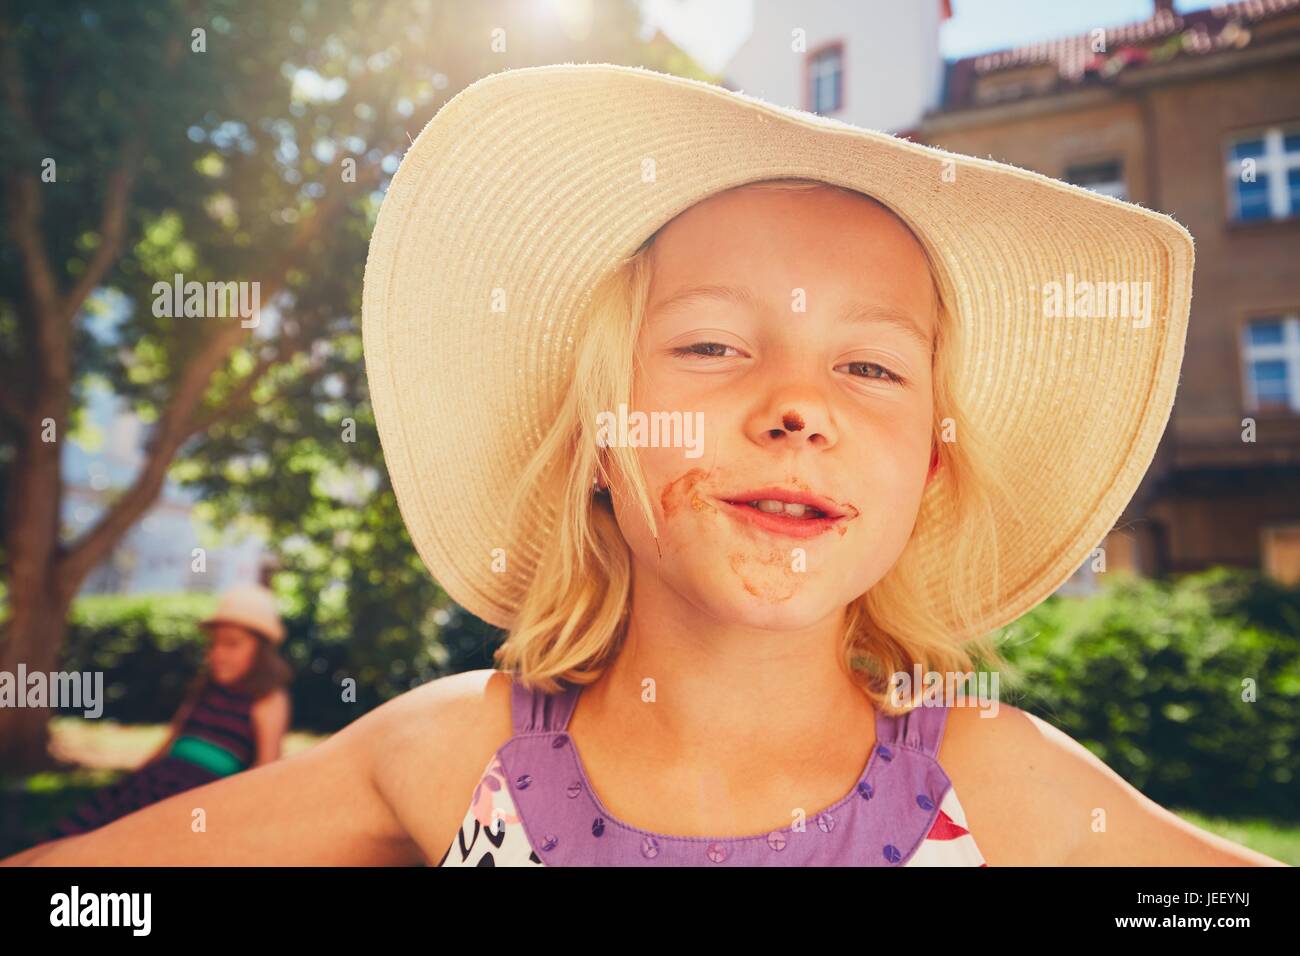 Giorno d'estate in città. Bambina con una bocca sporca dopo mangiare il gelato. Foto Stock